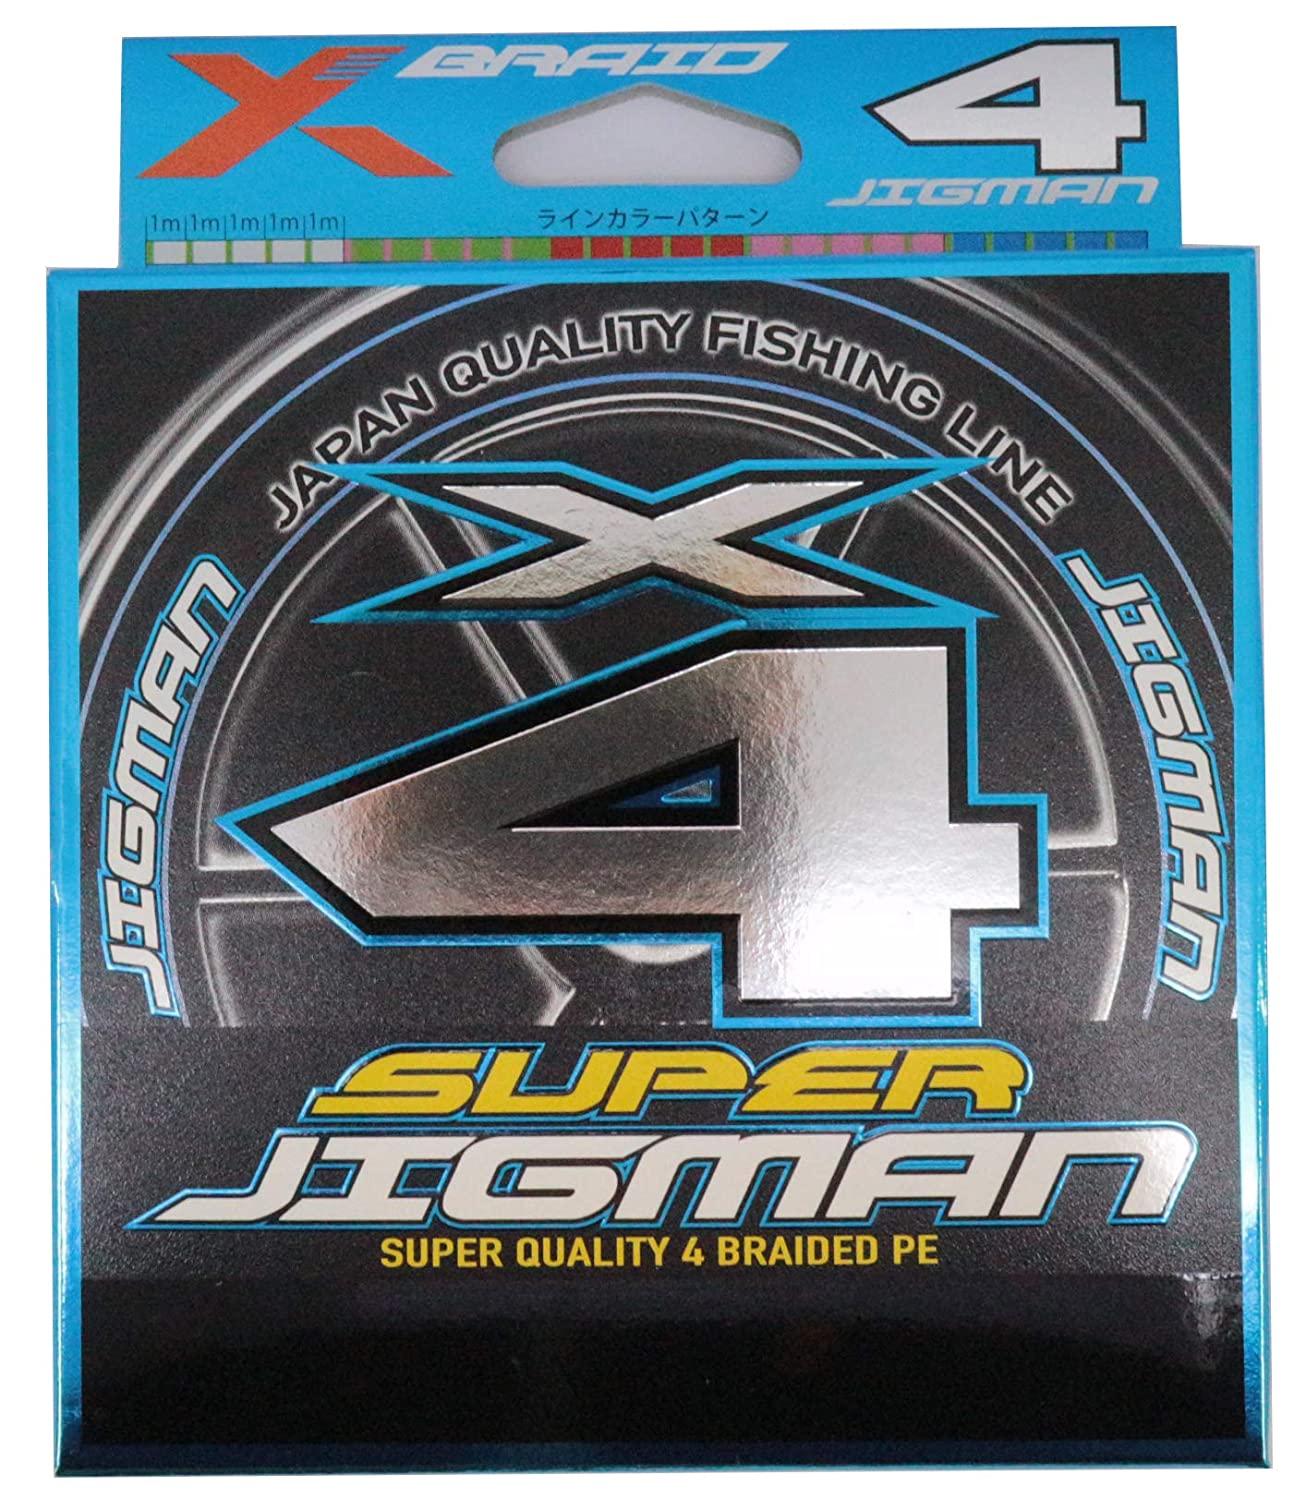  X-BRAID SUPER JIGMAN X4 200m 1.5 25lb